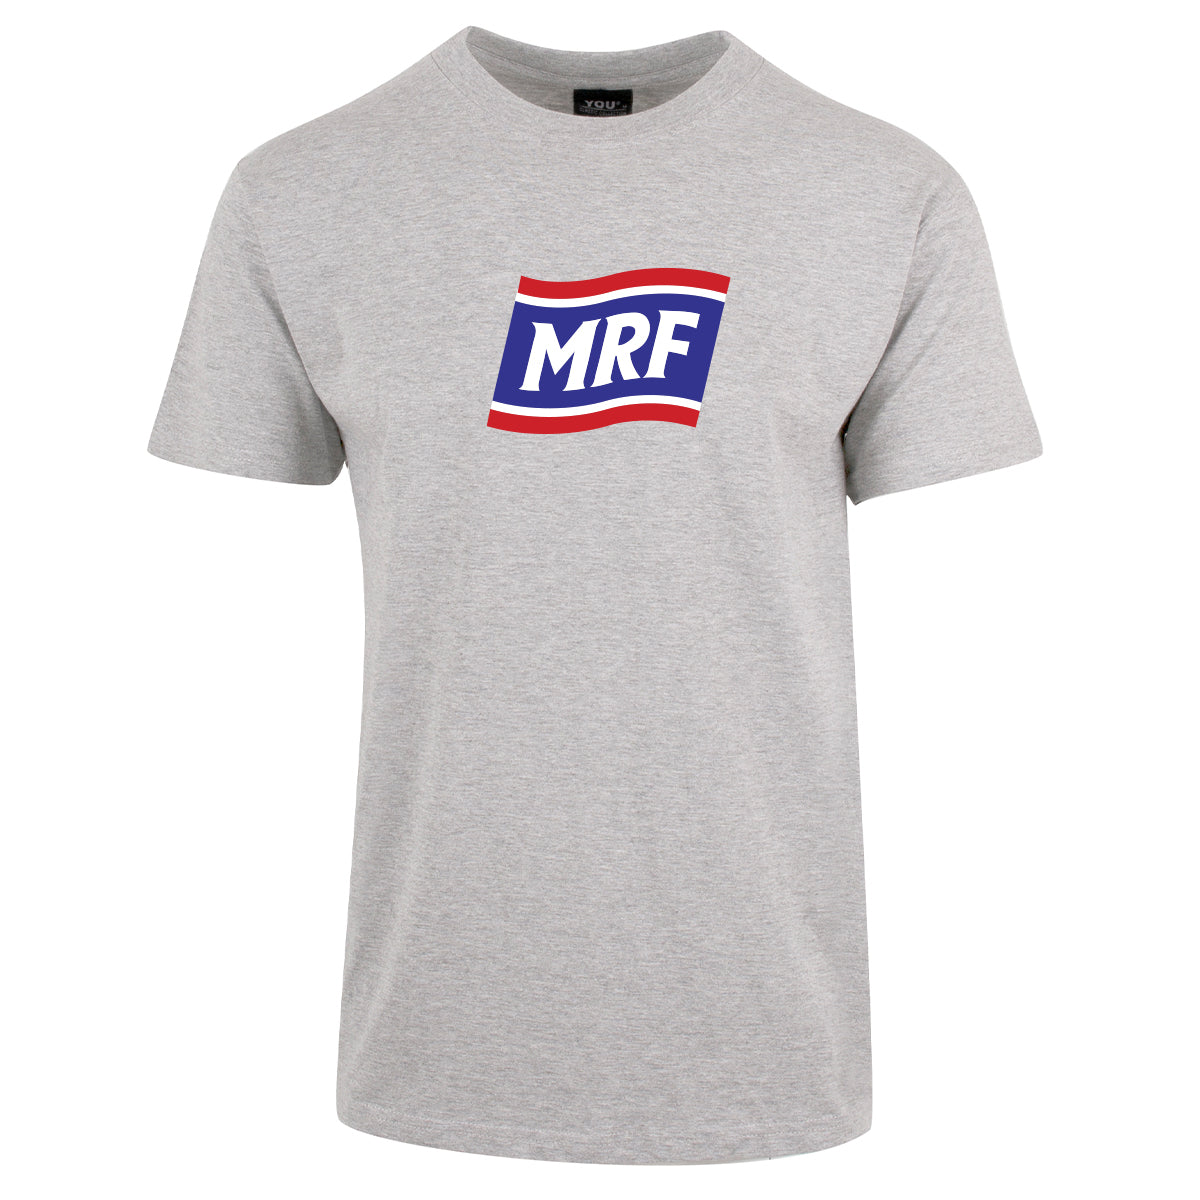 MRF Stor - tskjorte